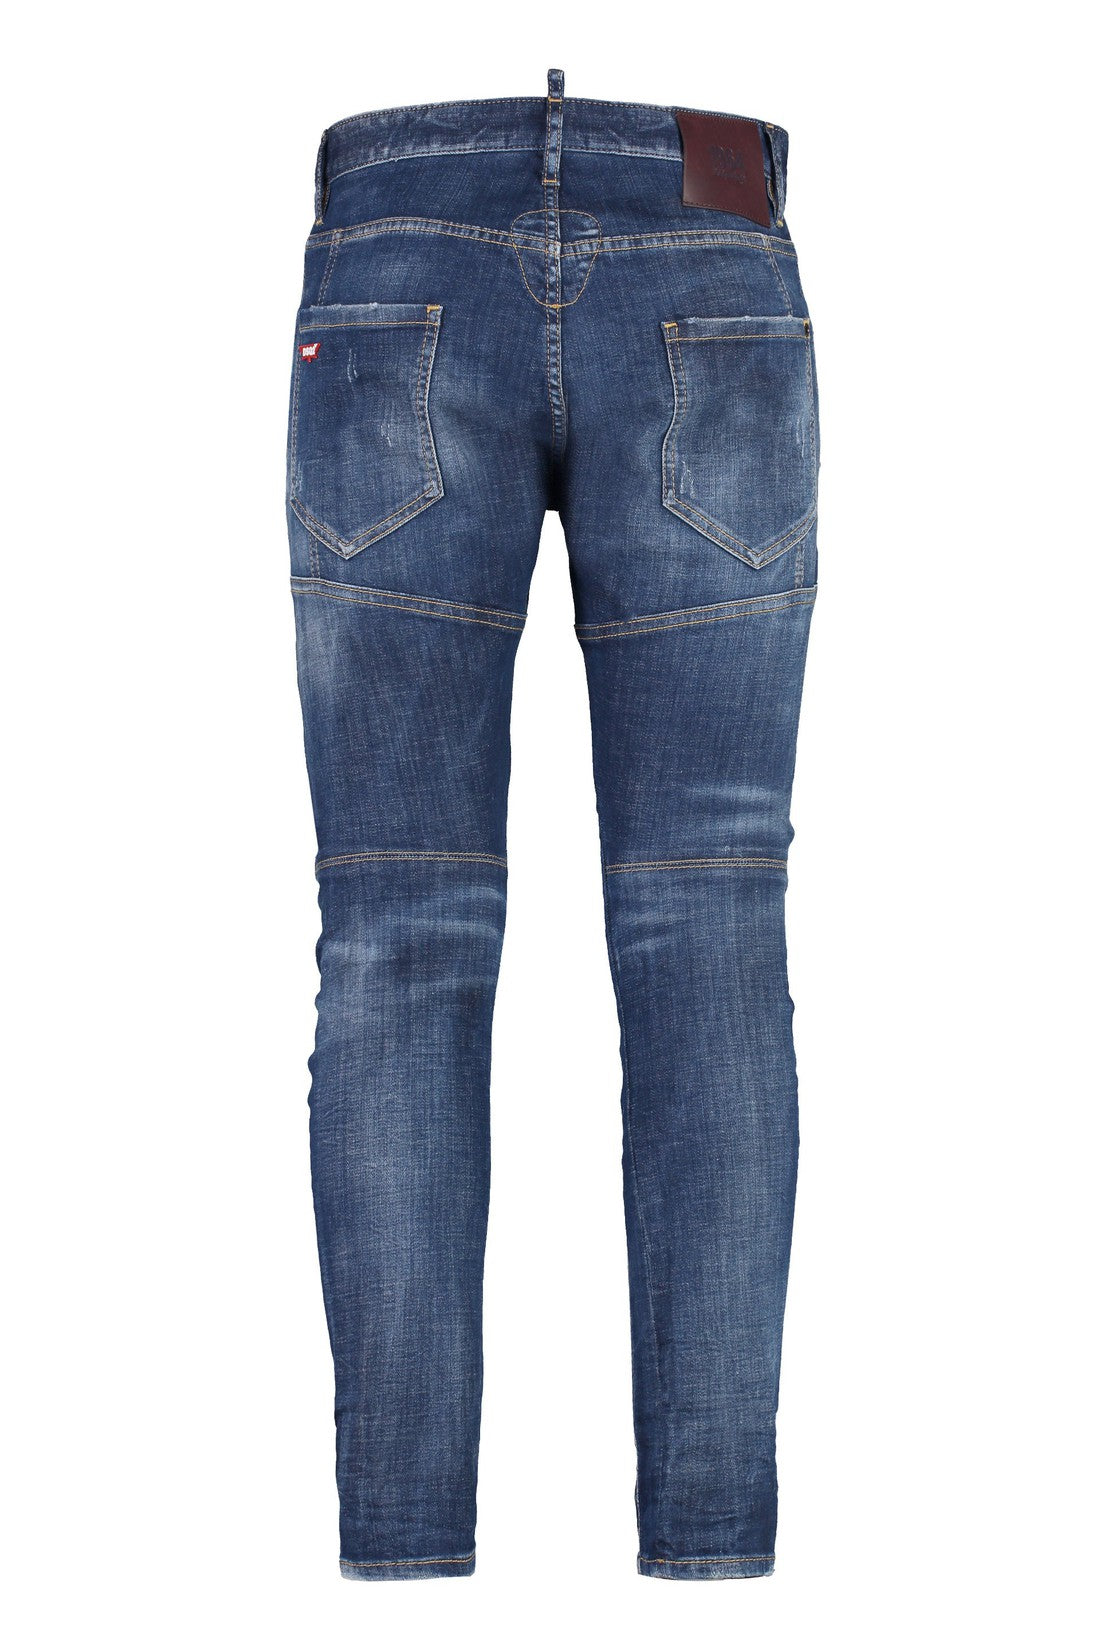 Dsquared2-OUTLET-SALE-Tidy jeans-ARCHIVIST